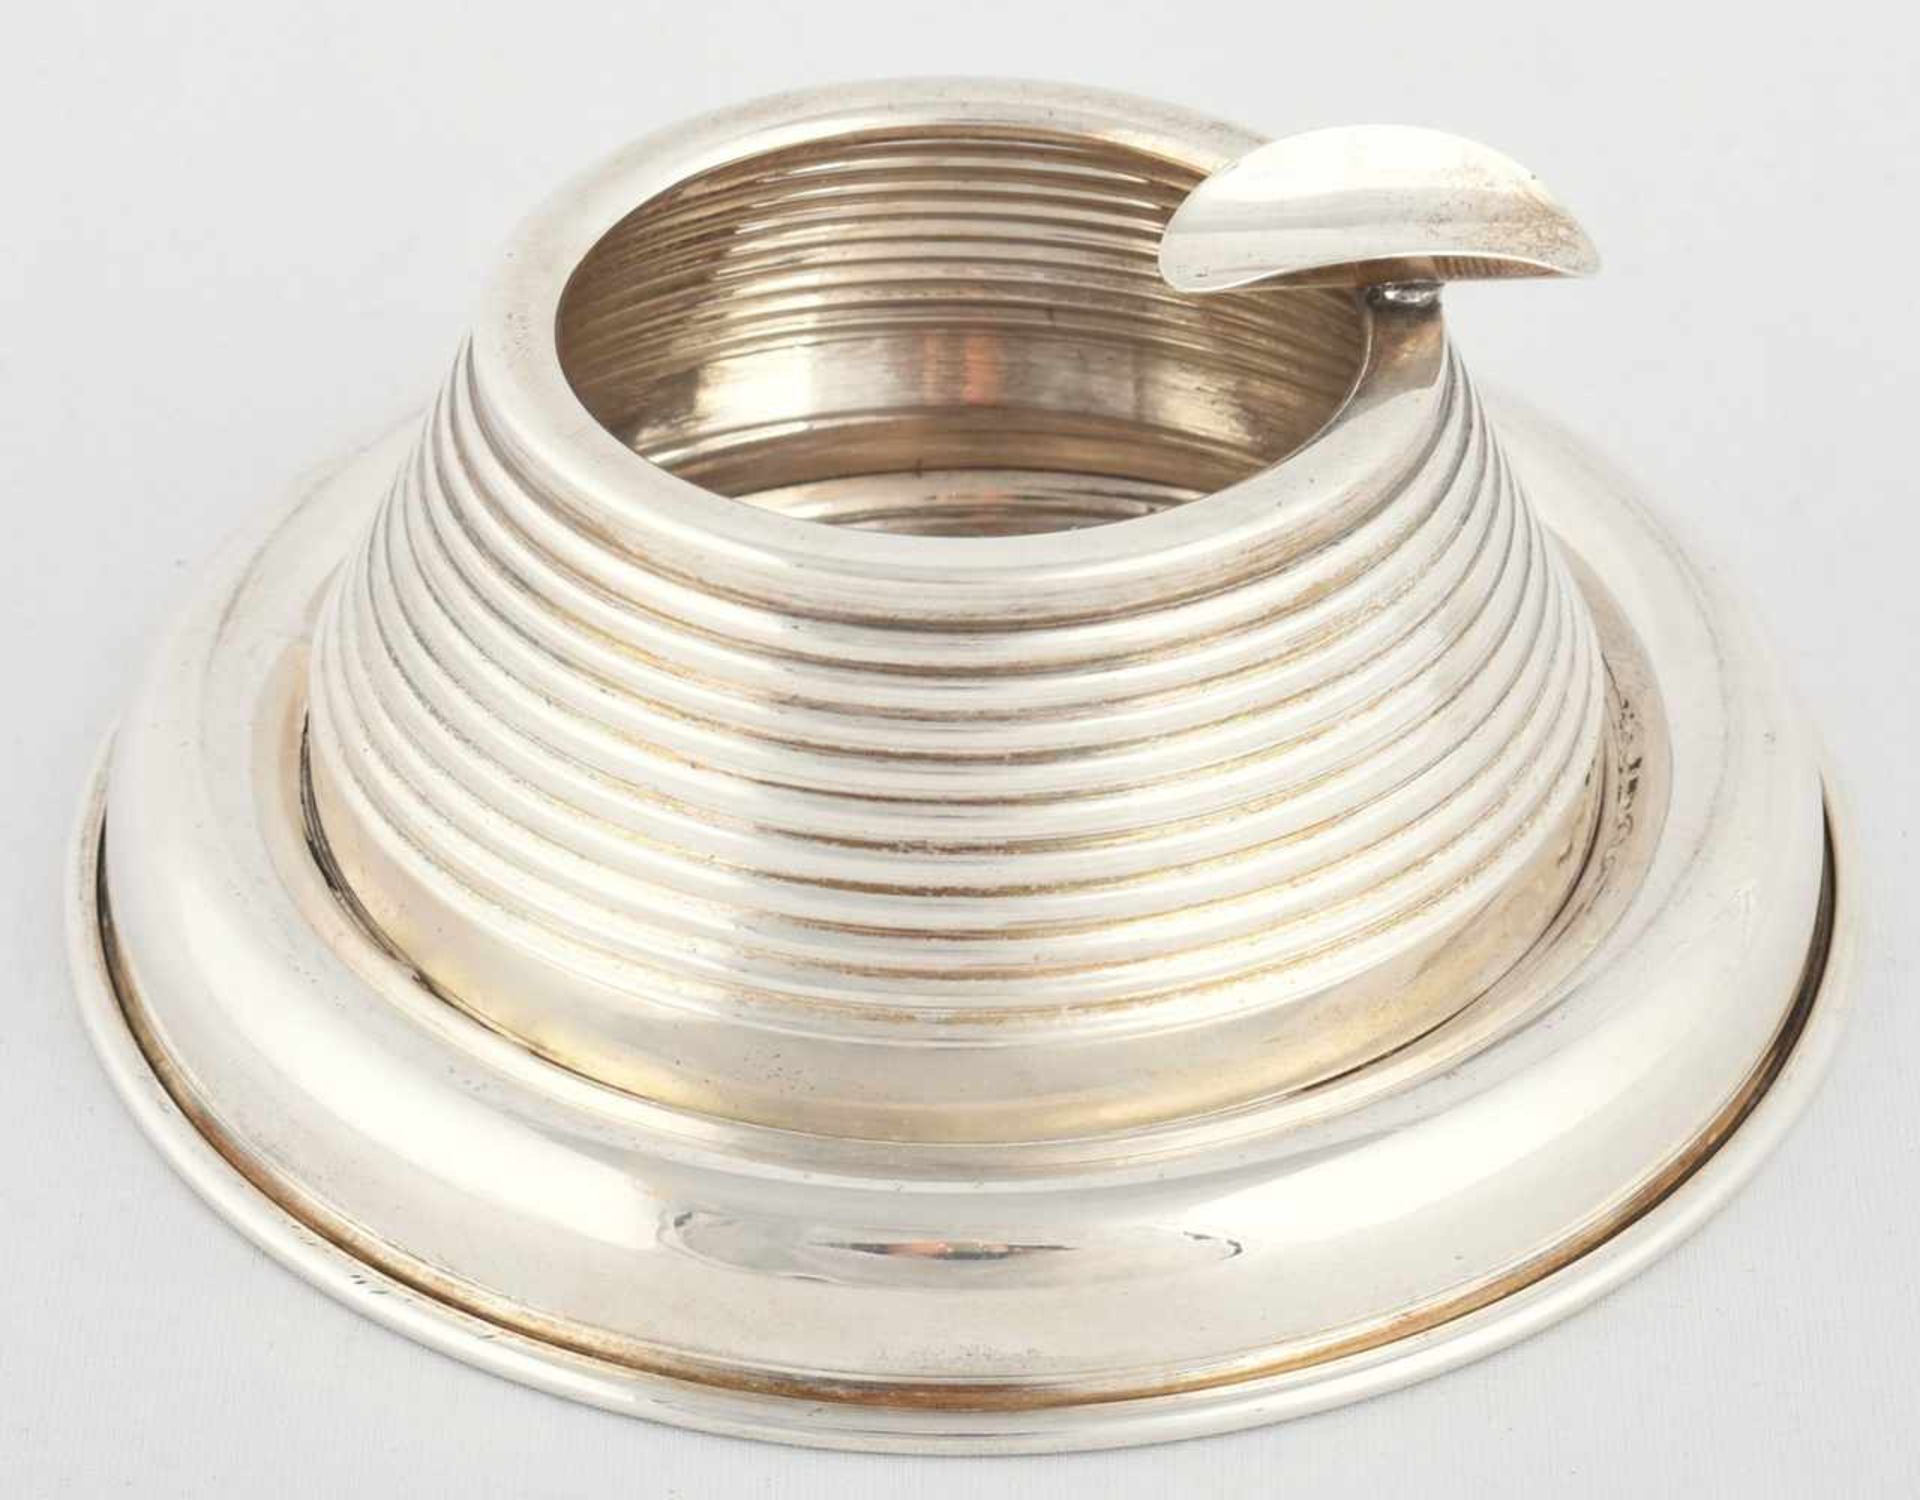 Aschenbecher Silber 900, gemarkt "Sener", runde Schale mit gebogenem Rand, darauf abnehmbare - Bild 2 aus 2